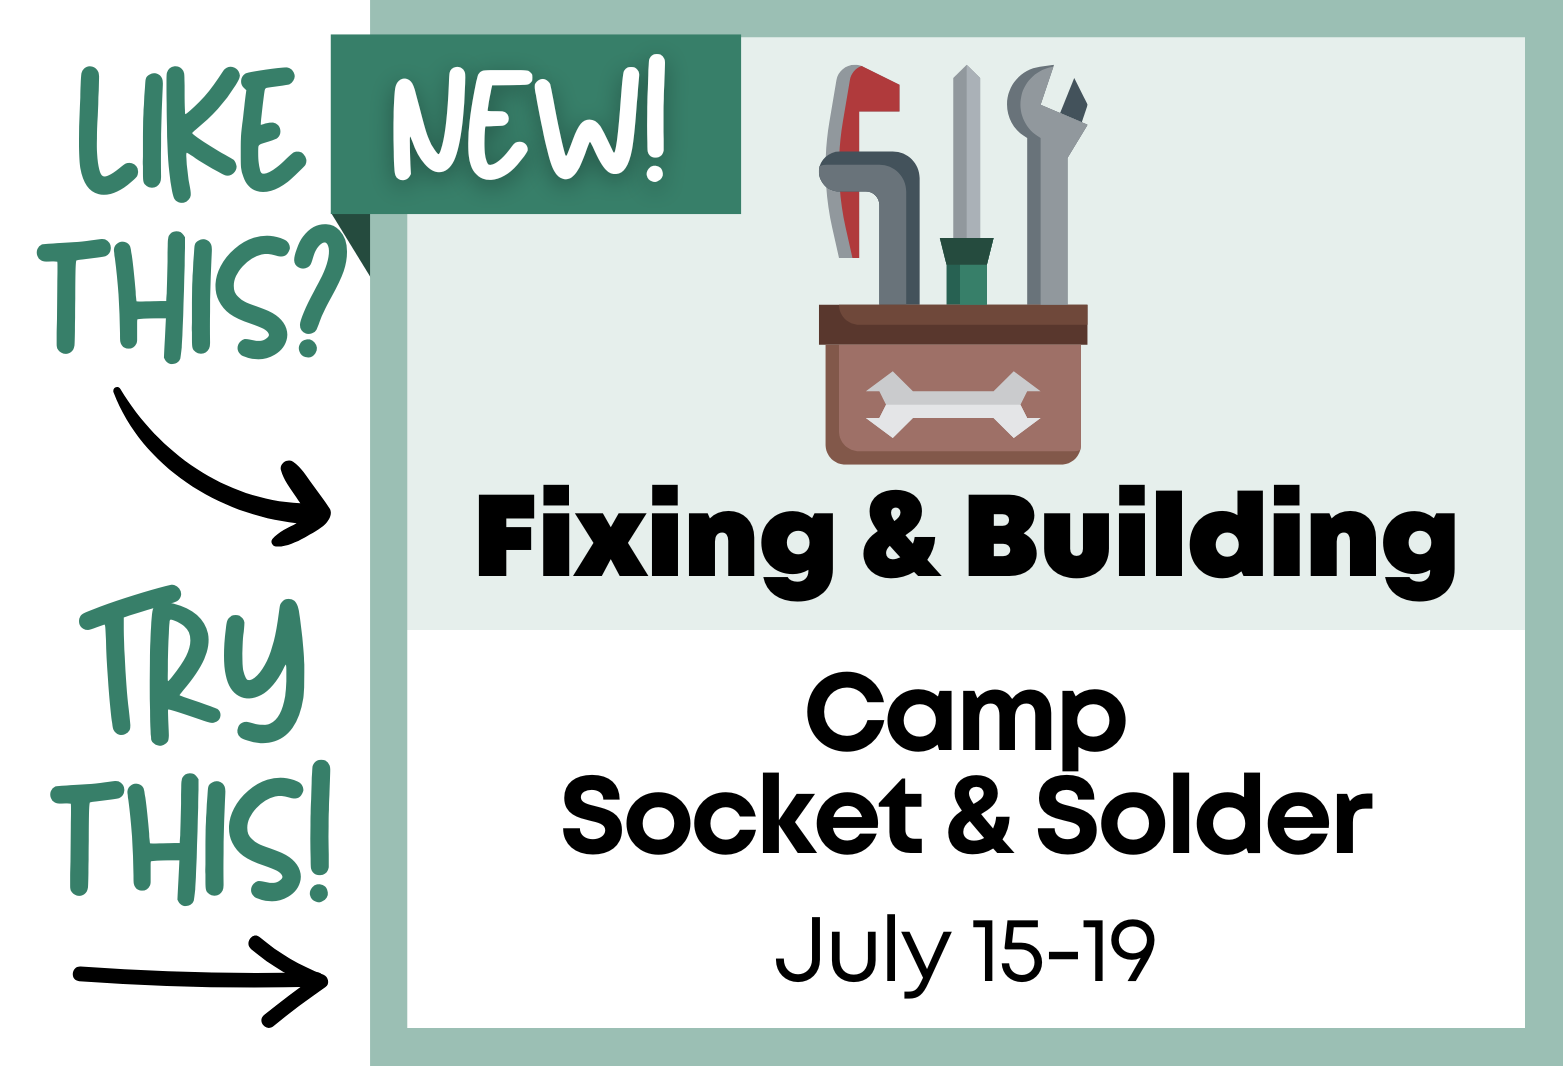 Camp Socket and Solder, July 15-19